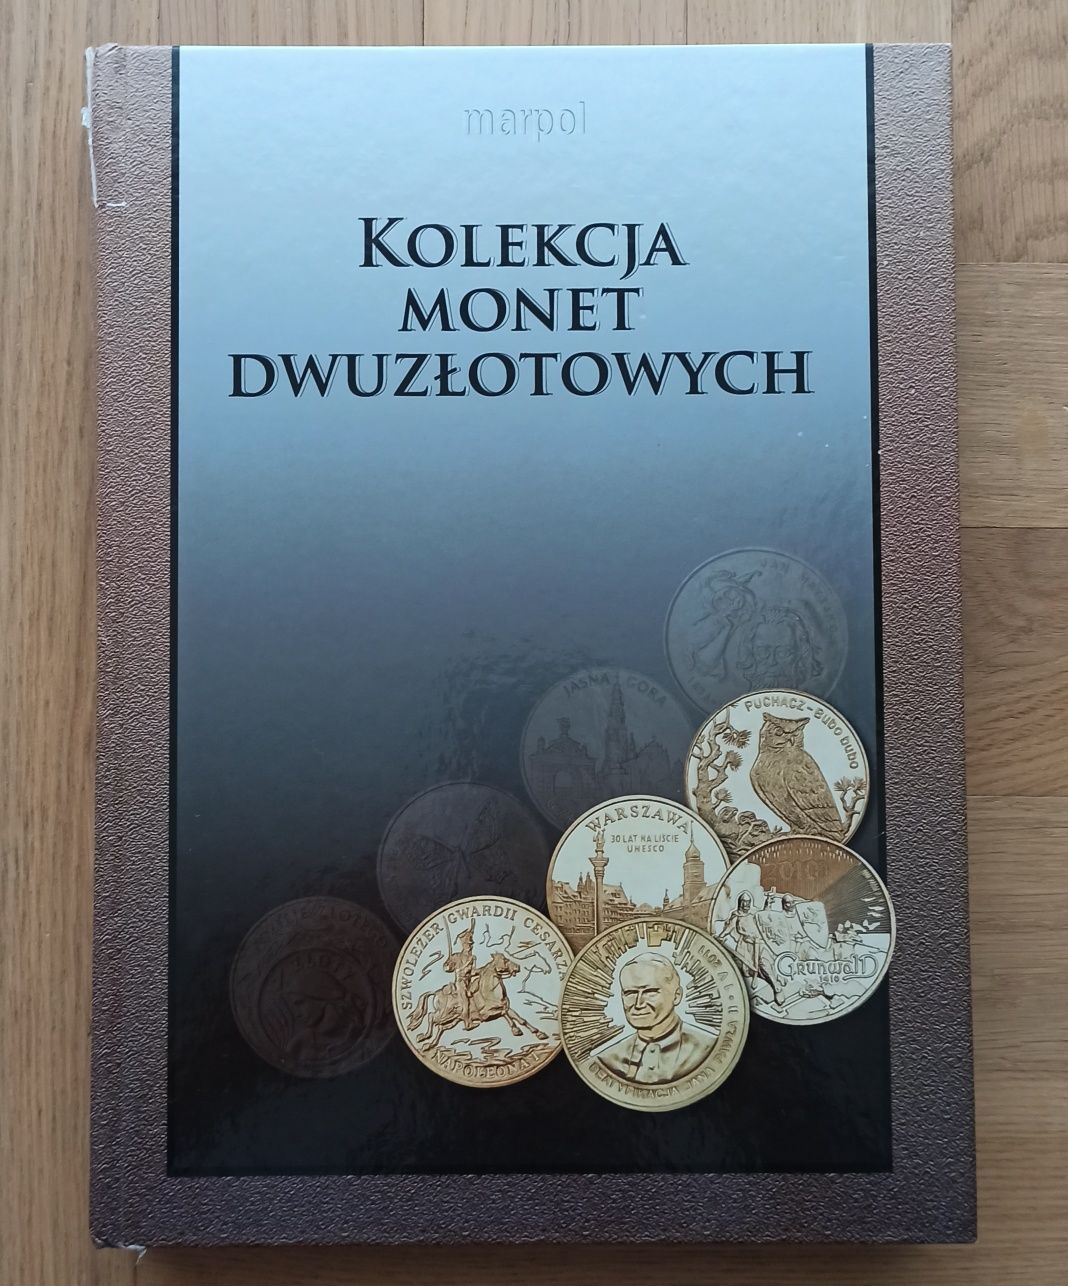 Kolekcja monet 2 zł * NBP * Okazja!